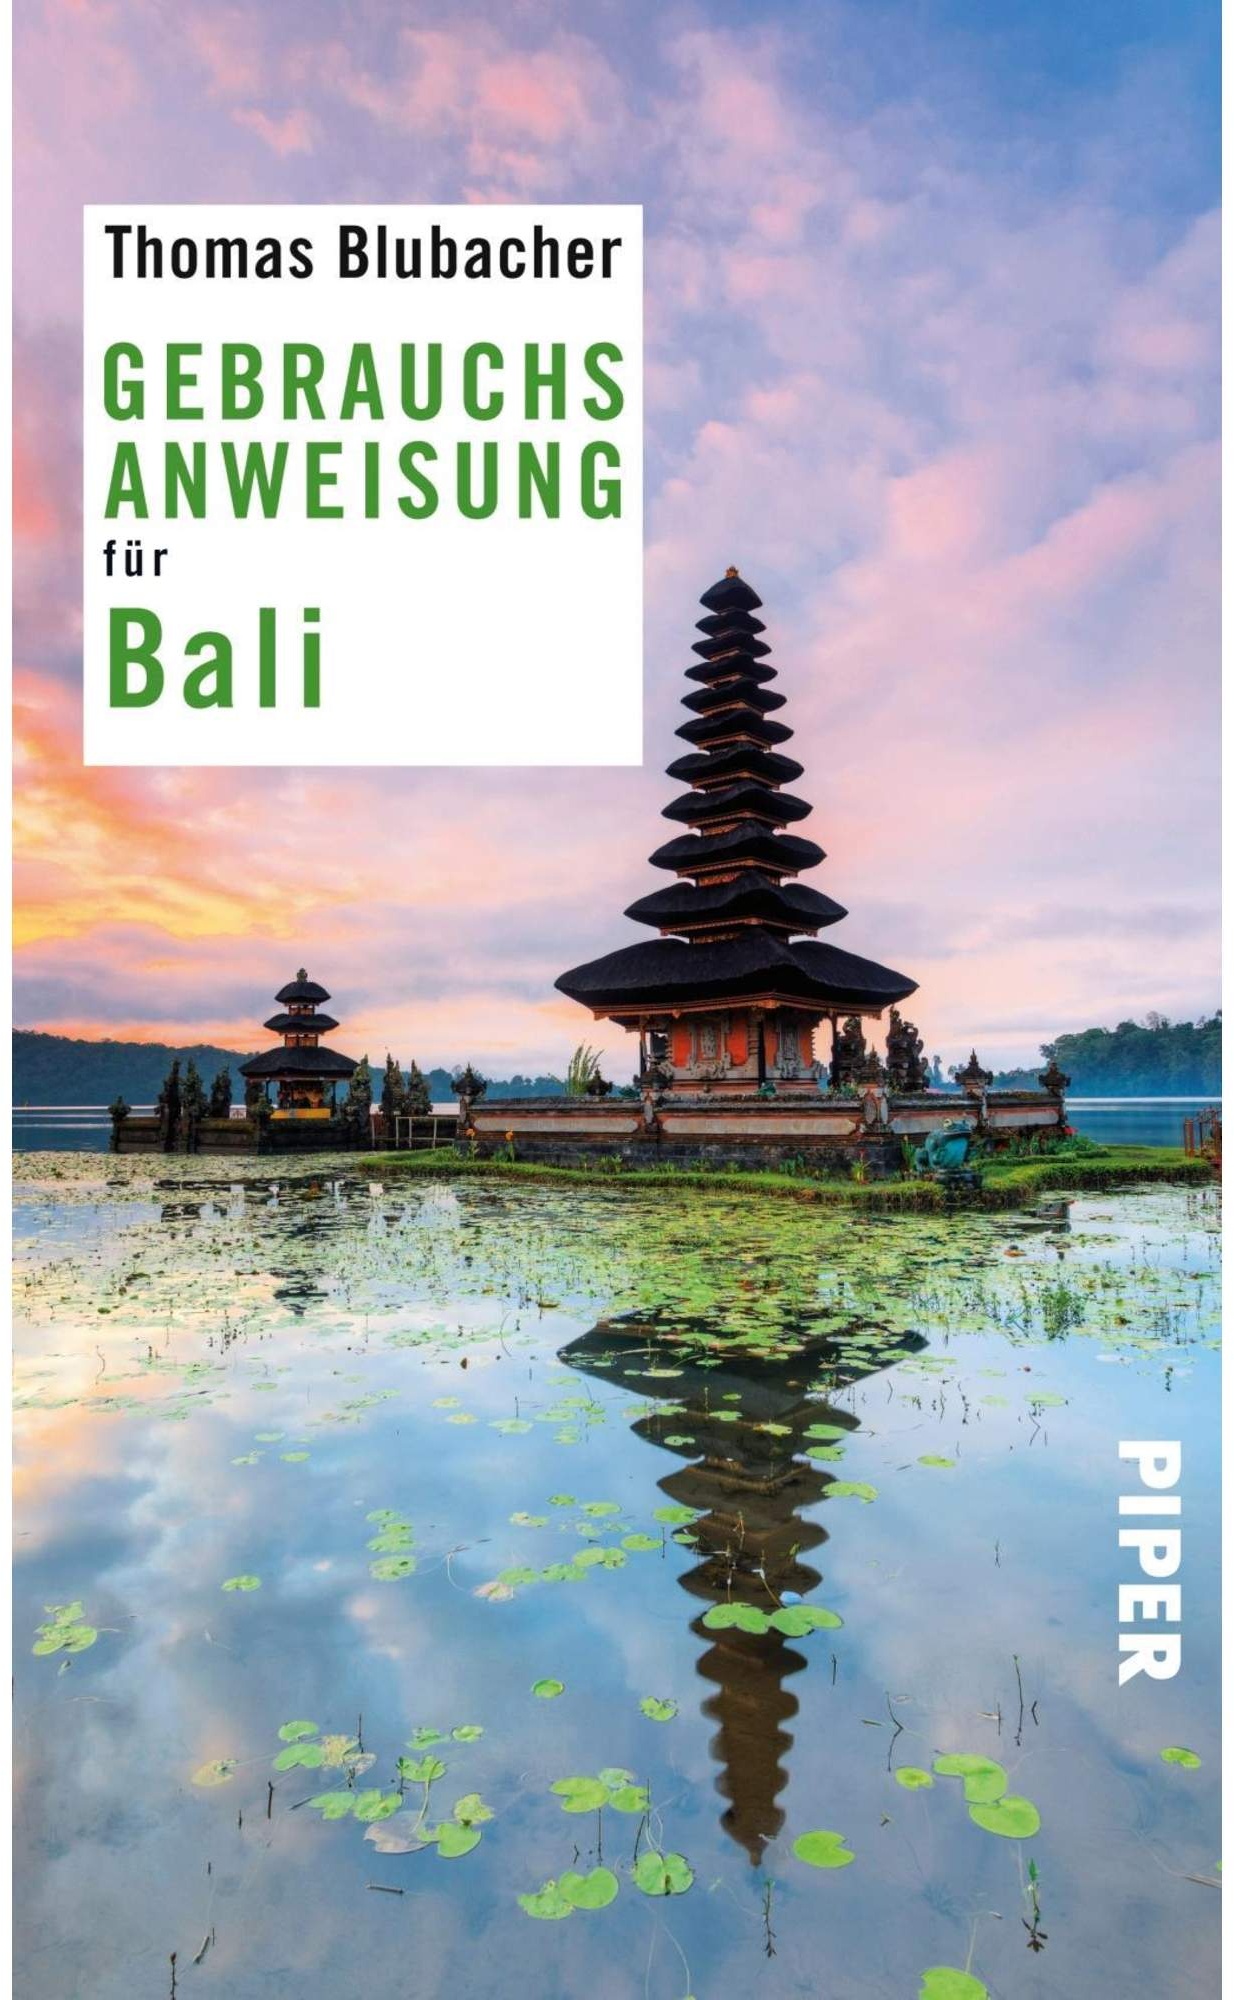 Reiseführer Südostasien - Gebrauchsanweisung für Bali - Indonesien